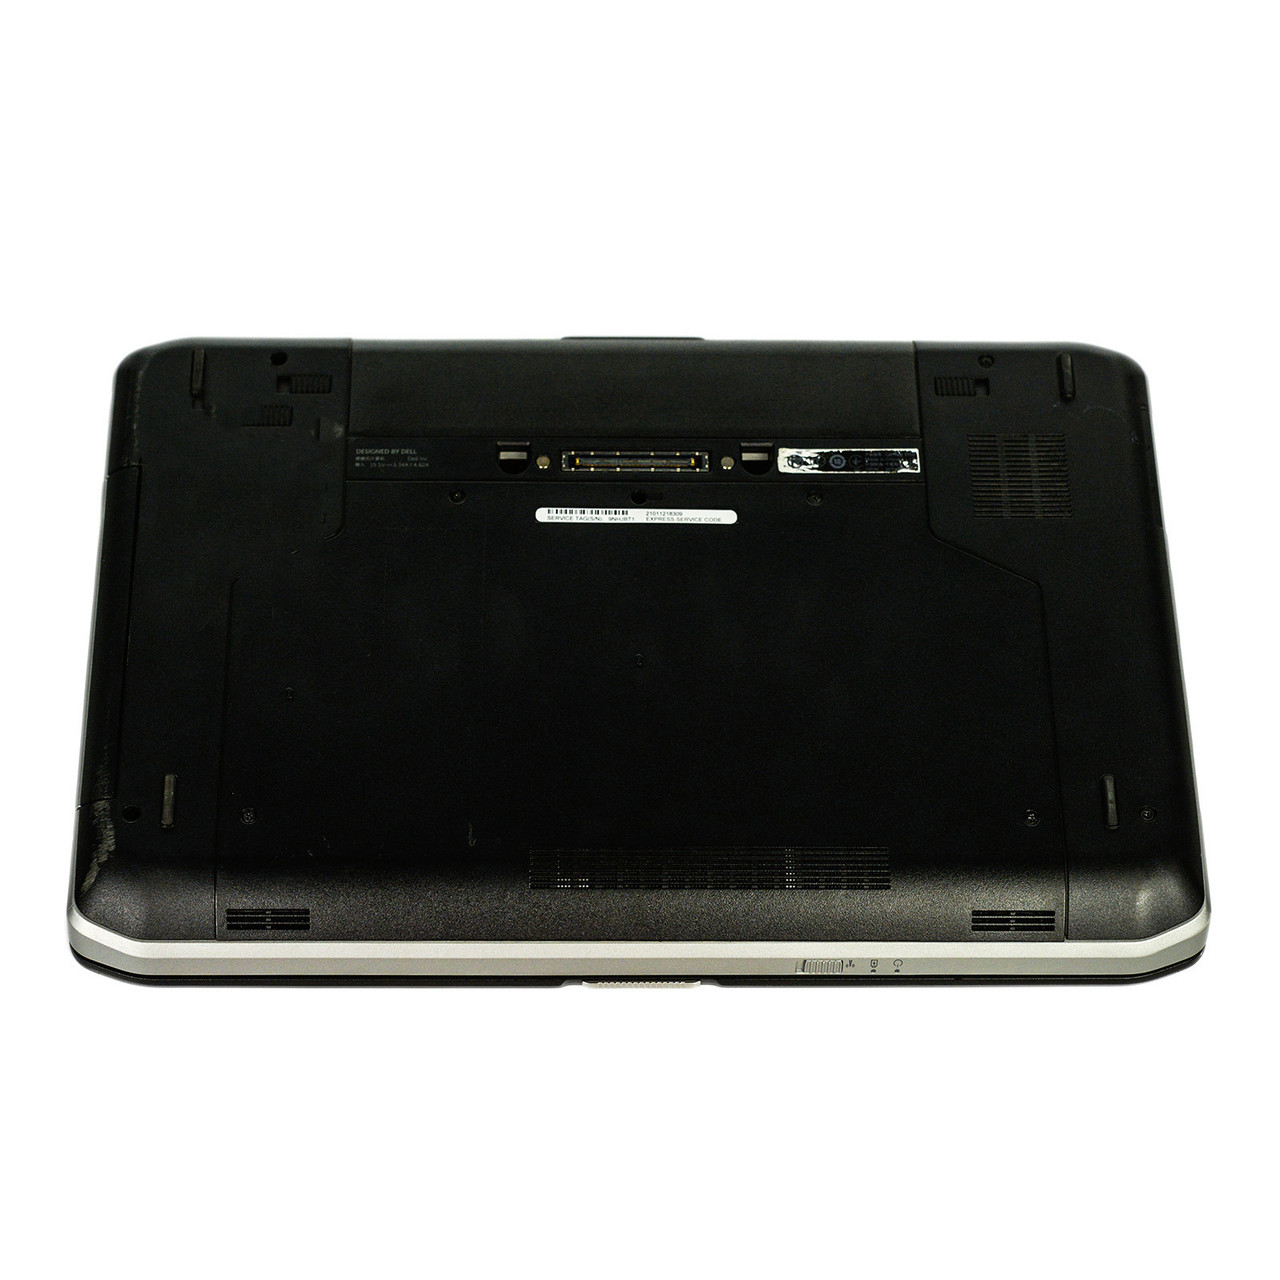 Dell Latitude E5520 Notebook Laptop I3 Dual Core 2056